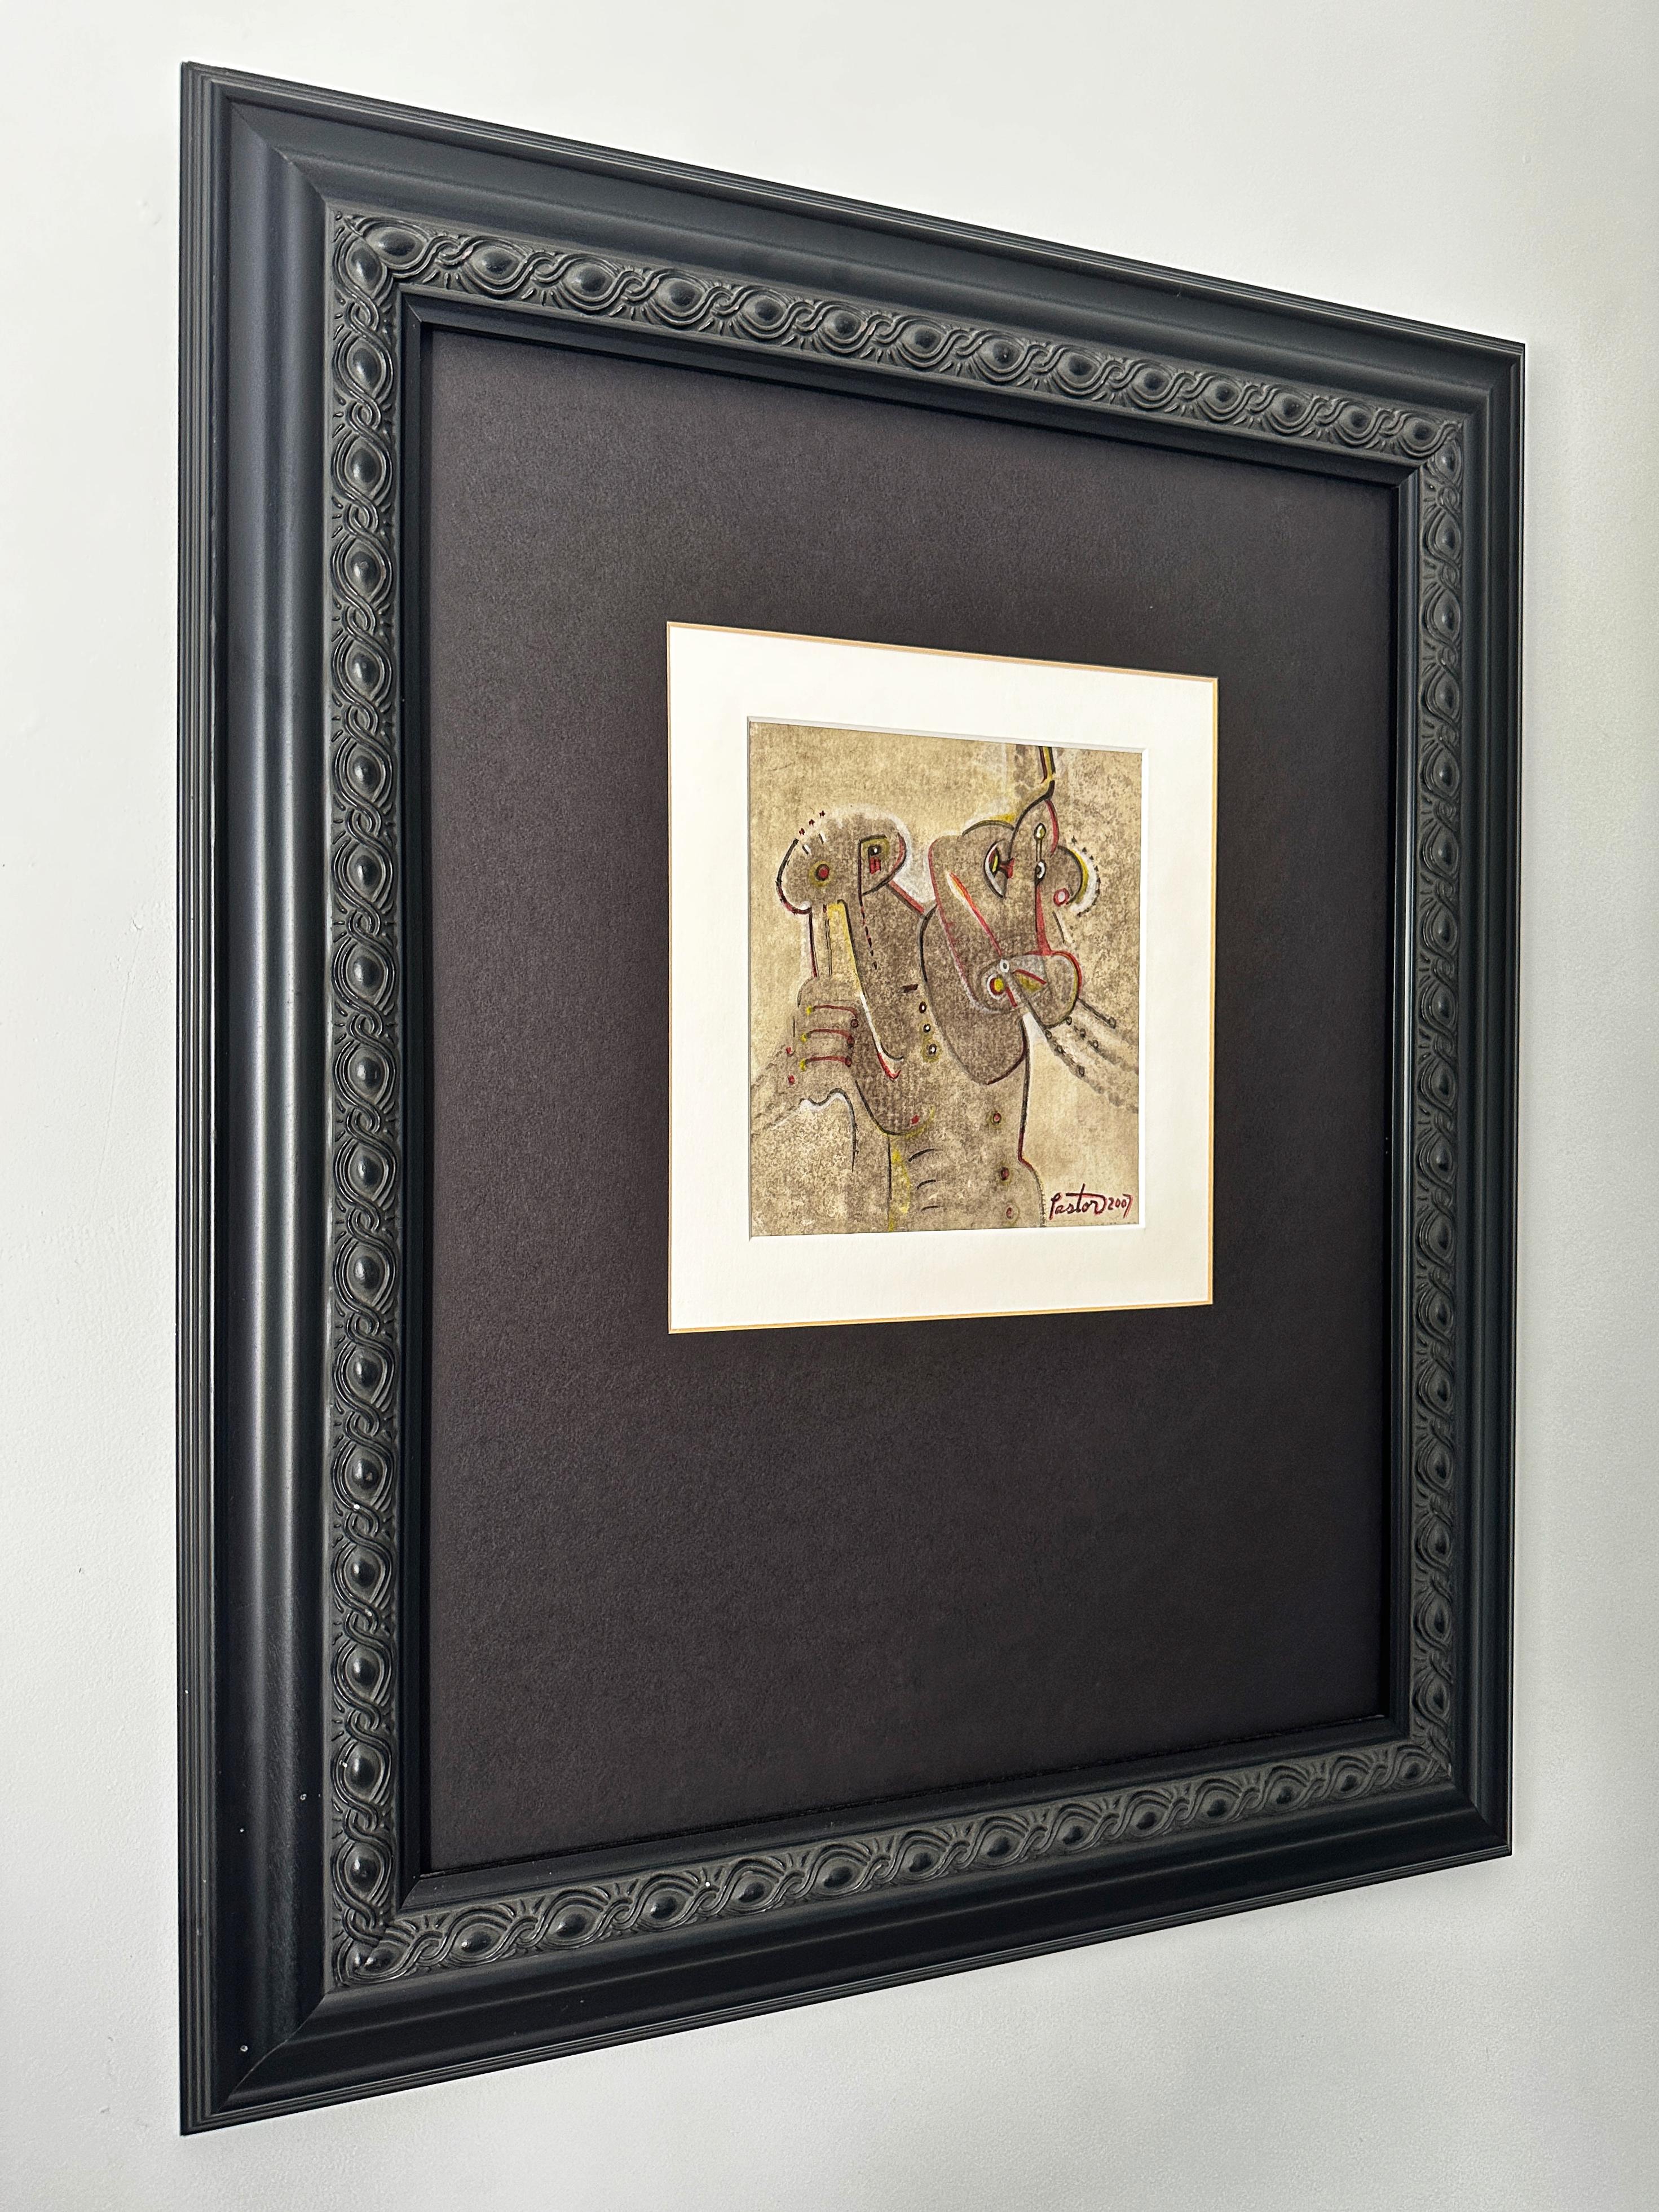 Cette aquarelle abstraite sur papier au thème tribal présente un guerrier figuratif avec un cheval et peut-être un arc et des flèches. L'artiste utilise principalement de l'aquarelle noire pour créer les différents degrés de couleurs sombres et de